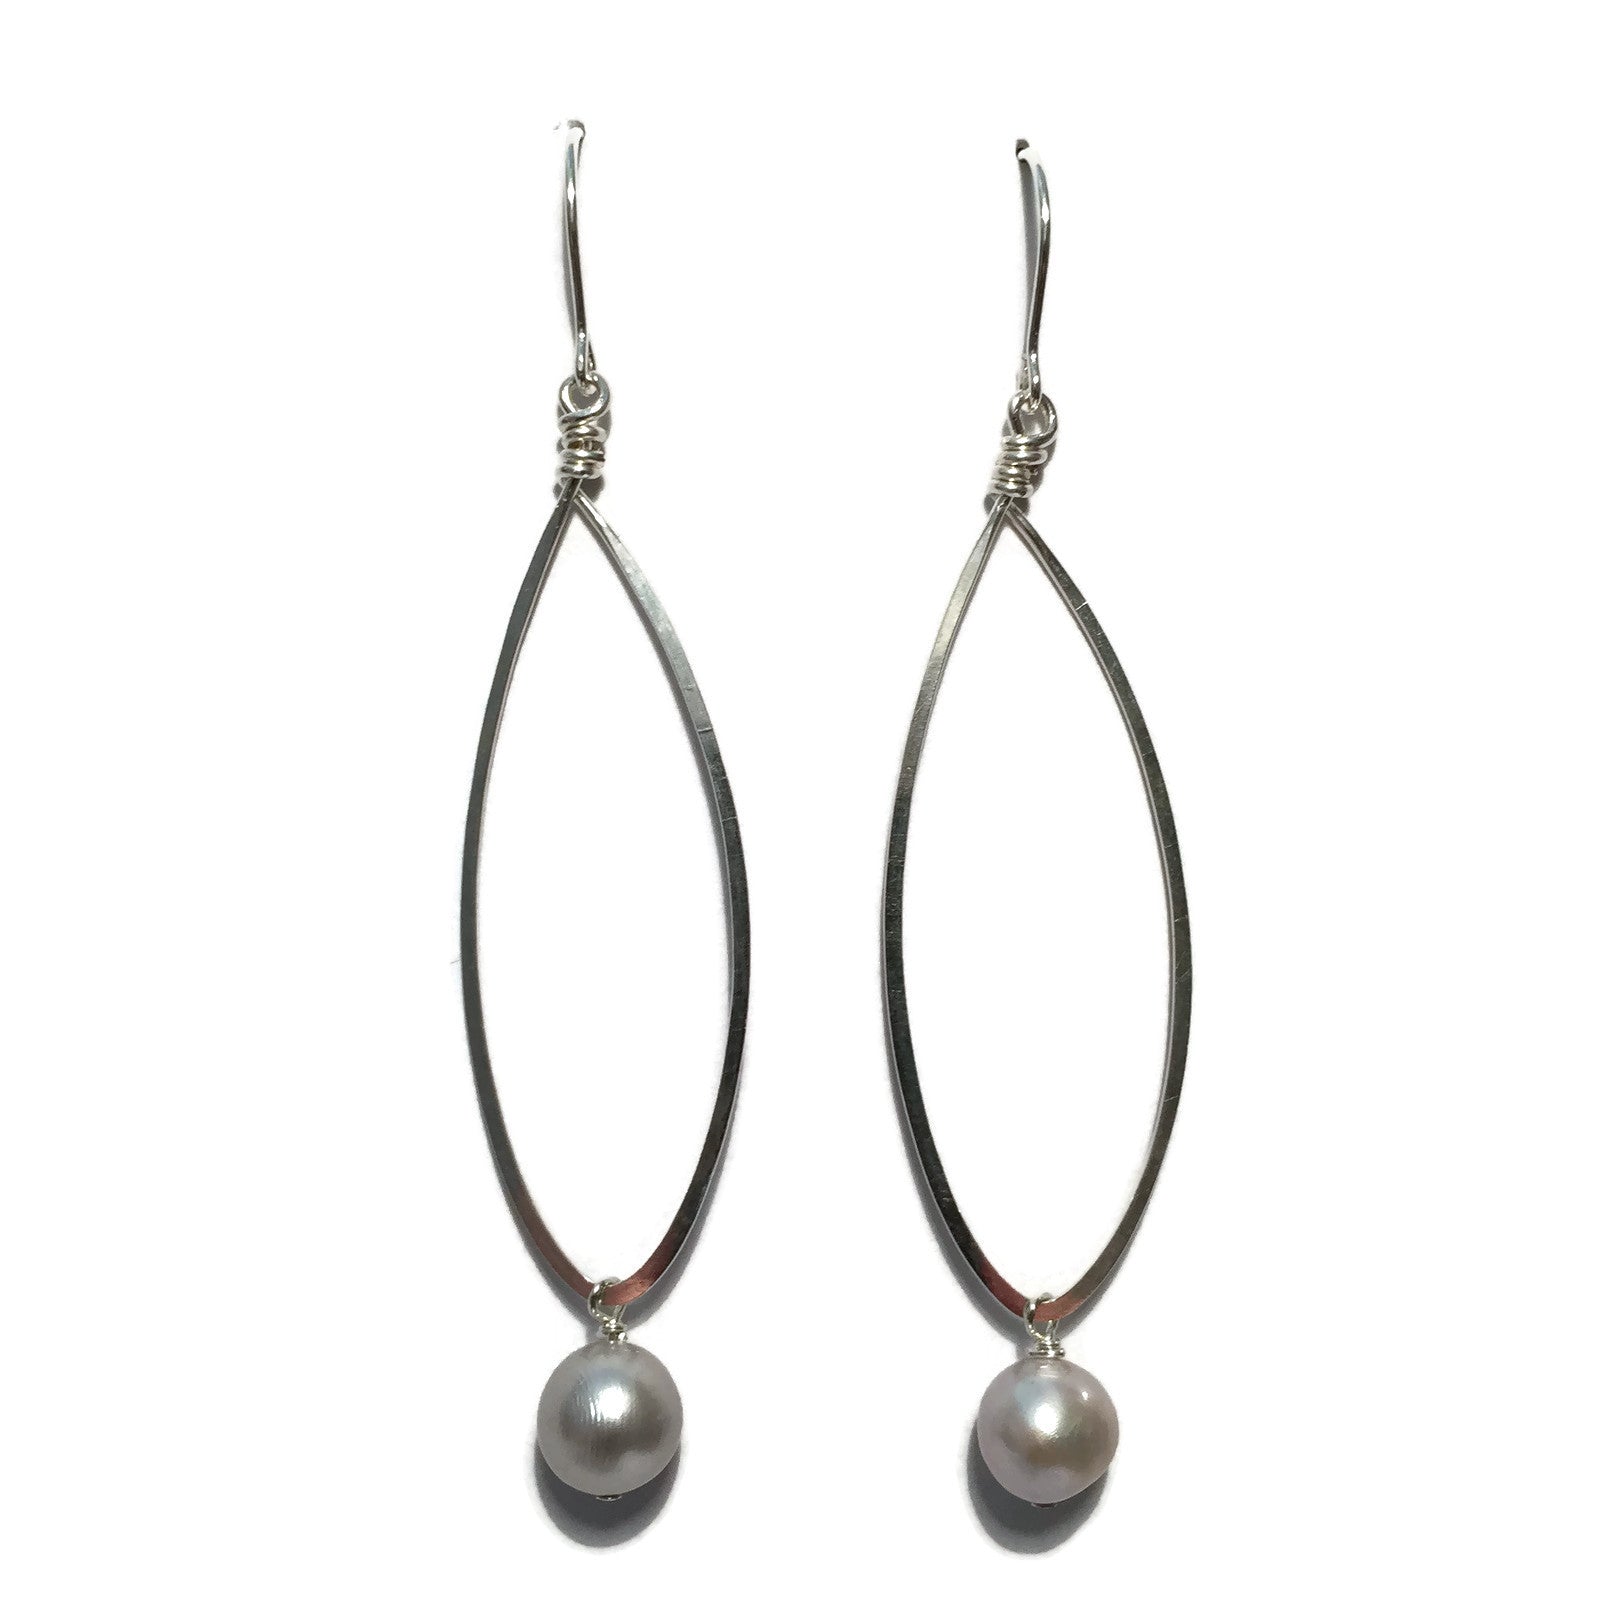 Beth Jewelry, handmade long teardrop earrings with beads